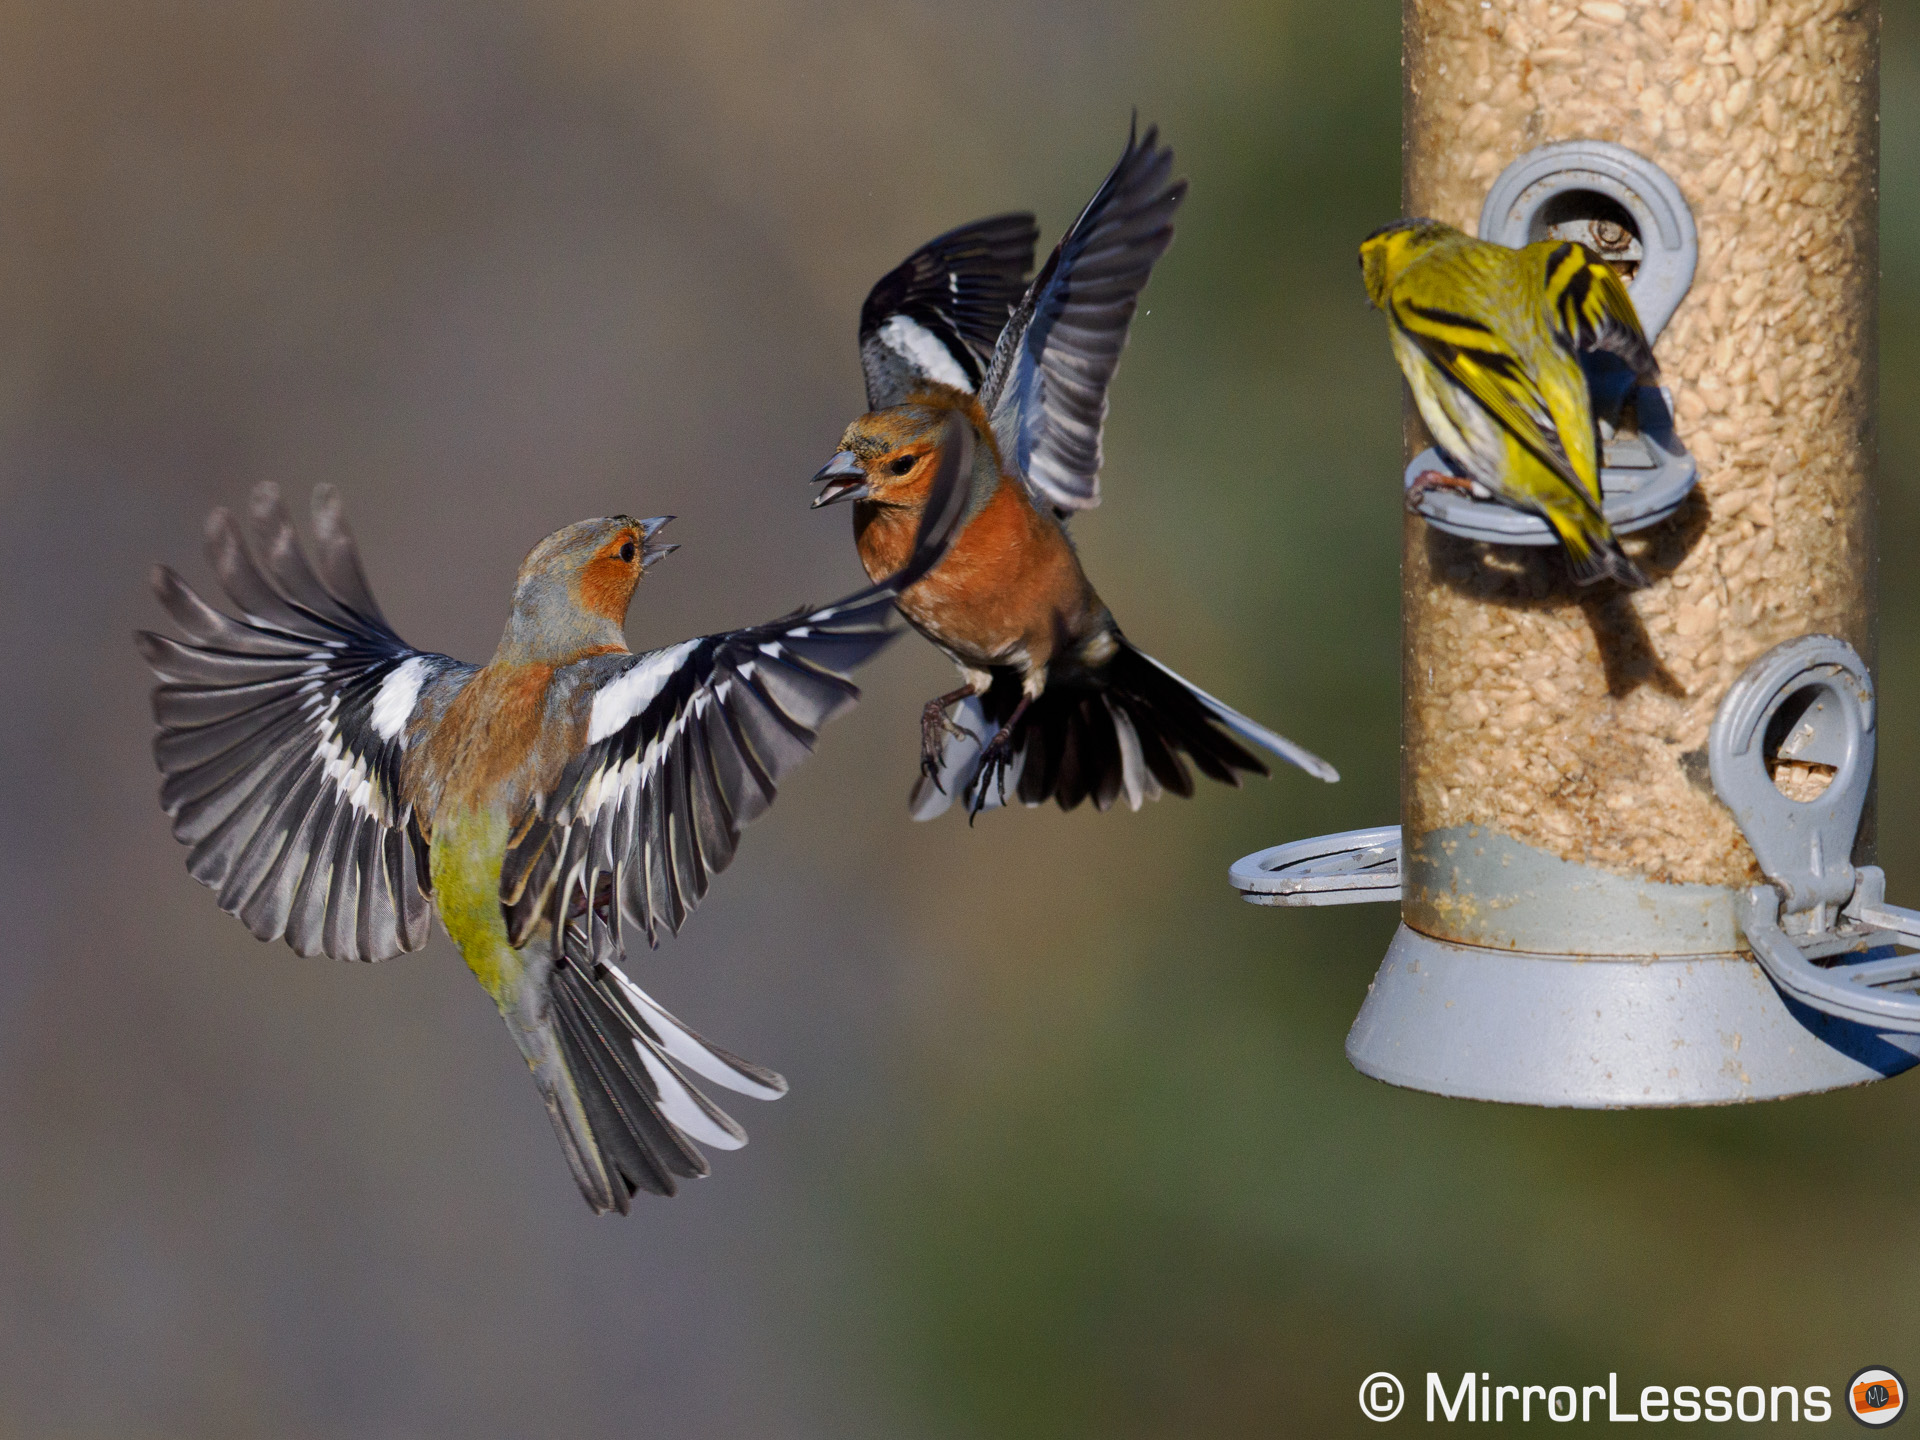 Two chaffinch fighting near a bird feeder